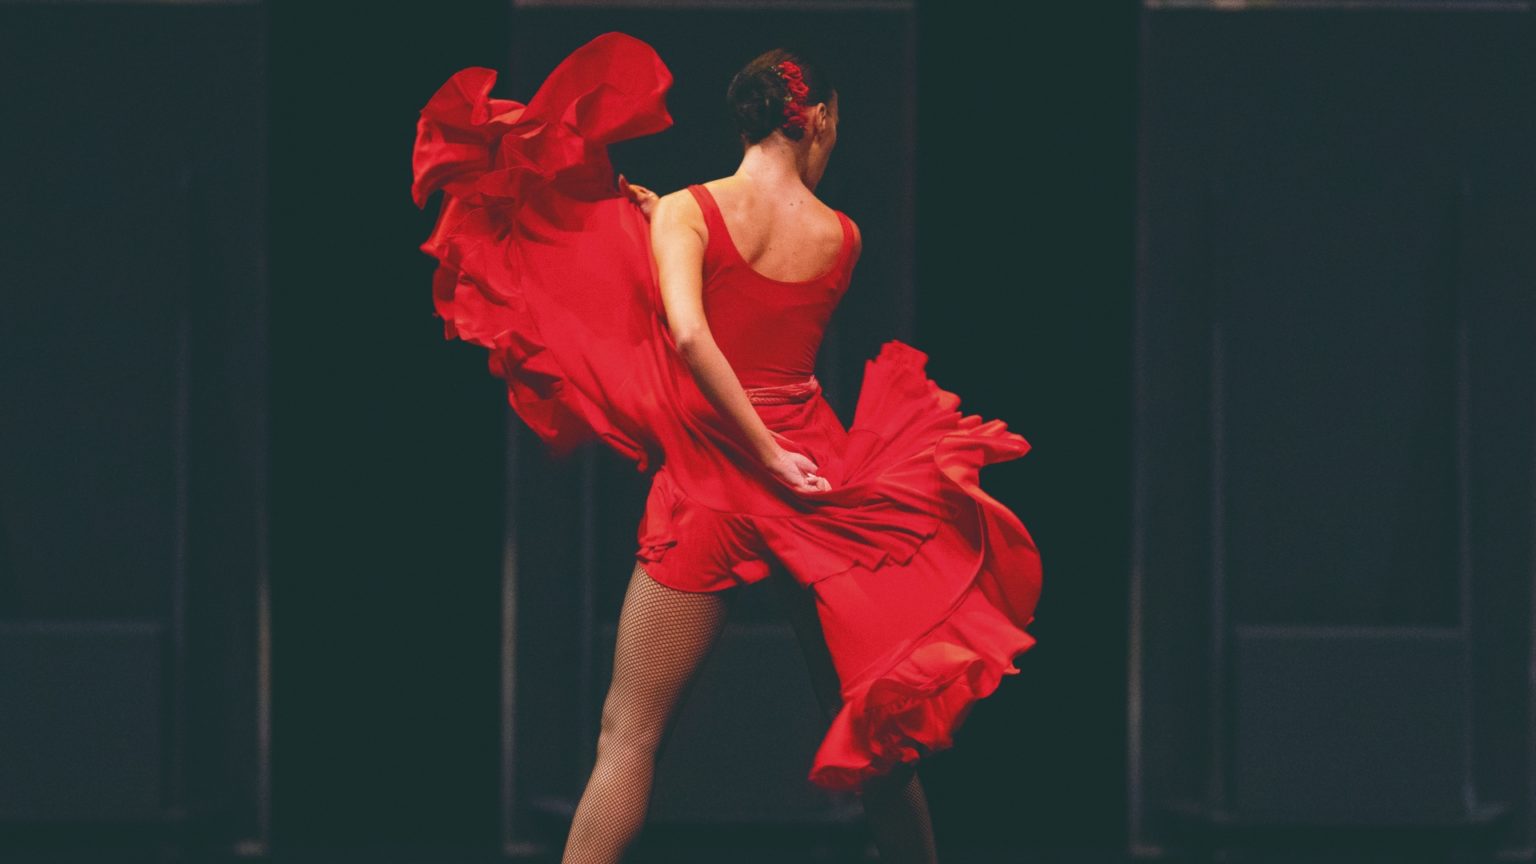 La ‘Carmen’ de Antonio Gades, una leyenda del flamenco y el cine español que regresa a los teatros